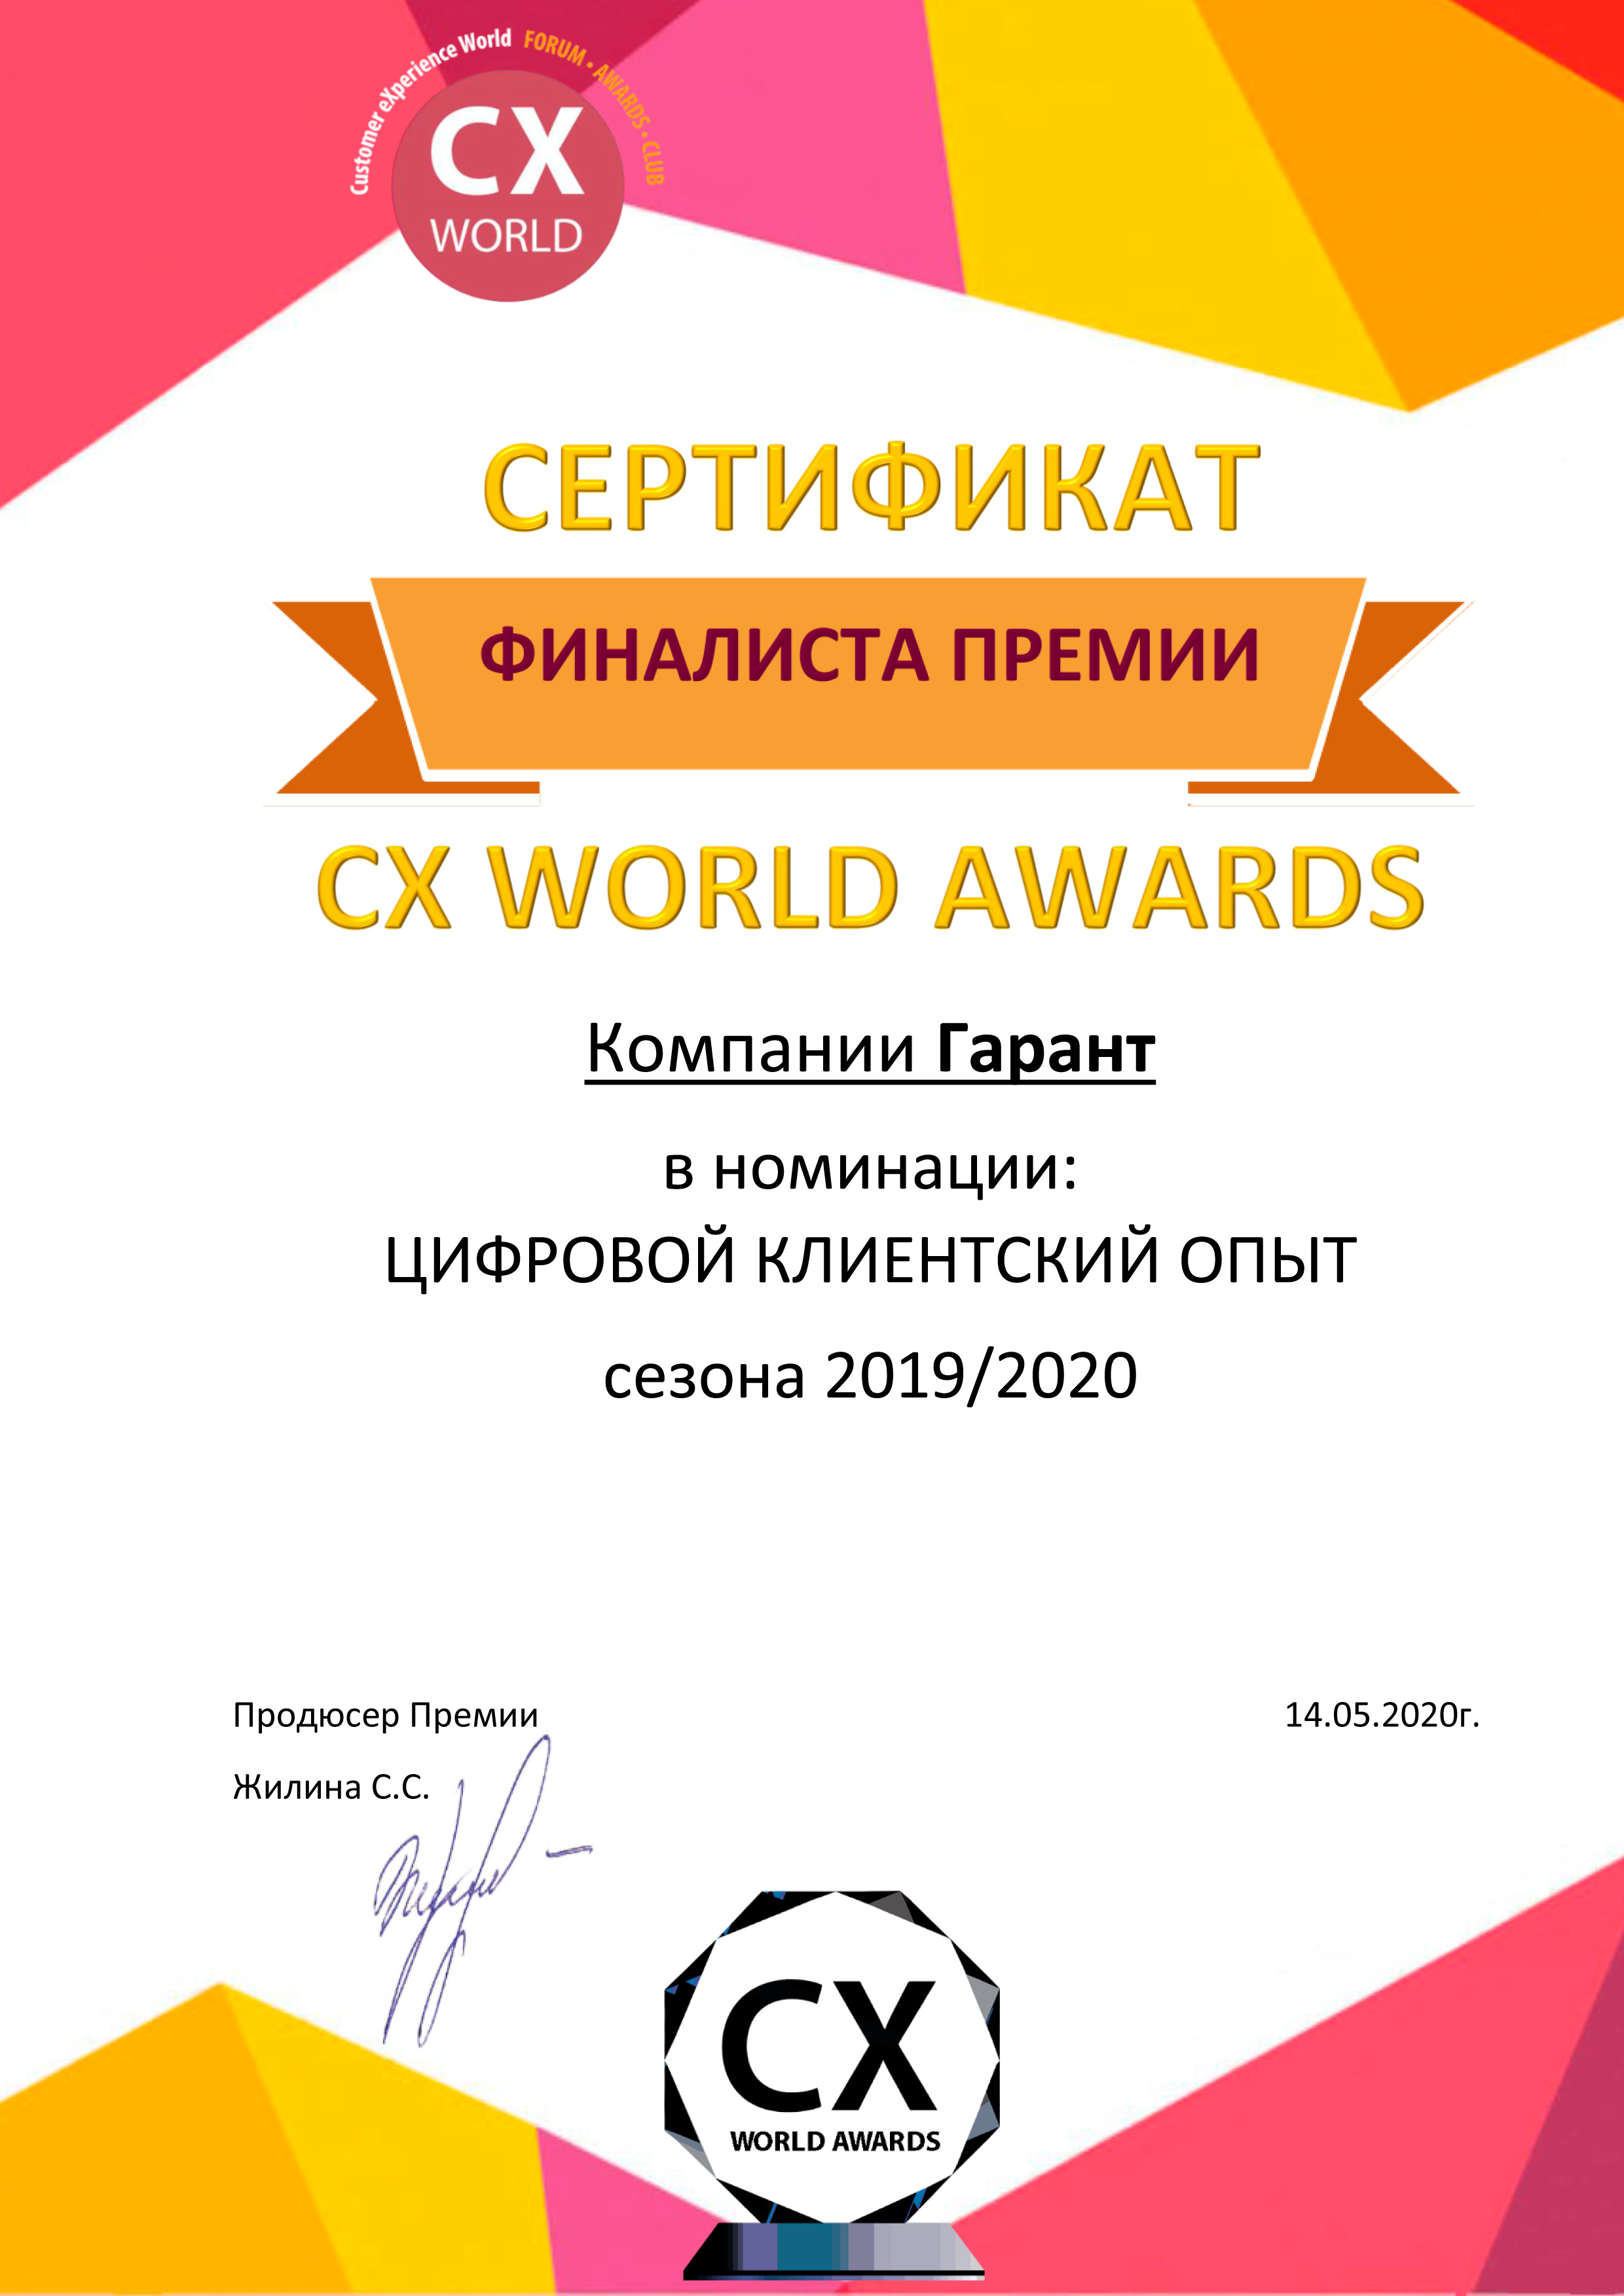     CX WORLD AWARDS        2019/2020